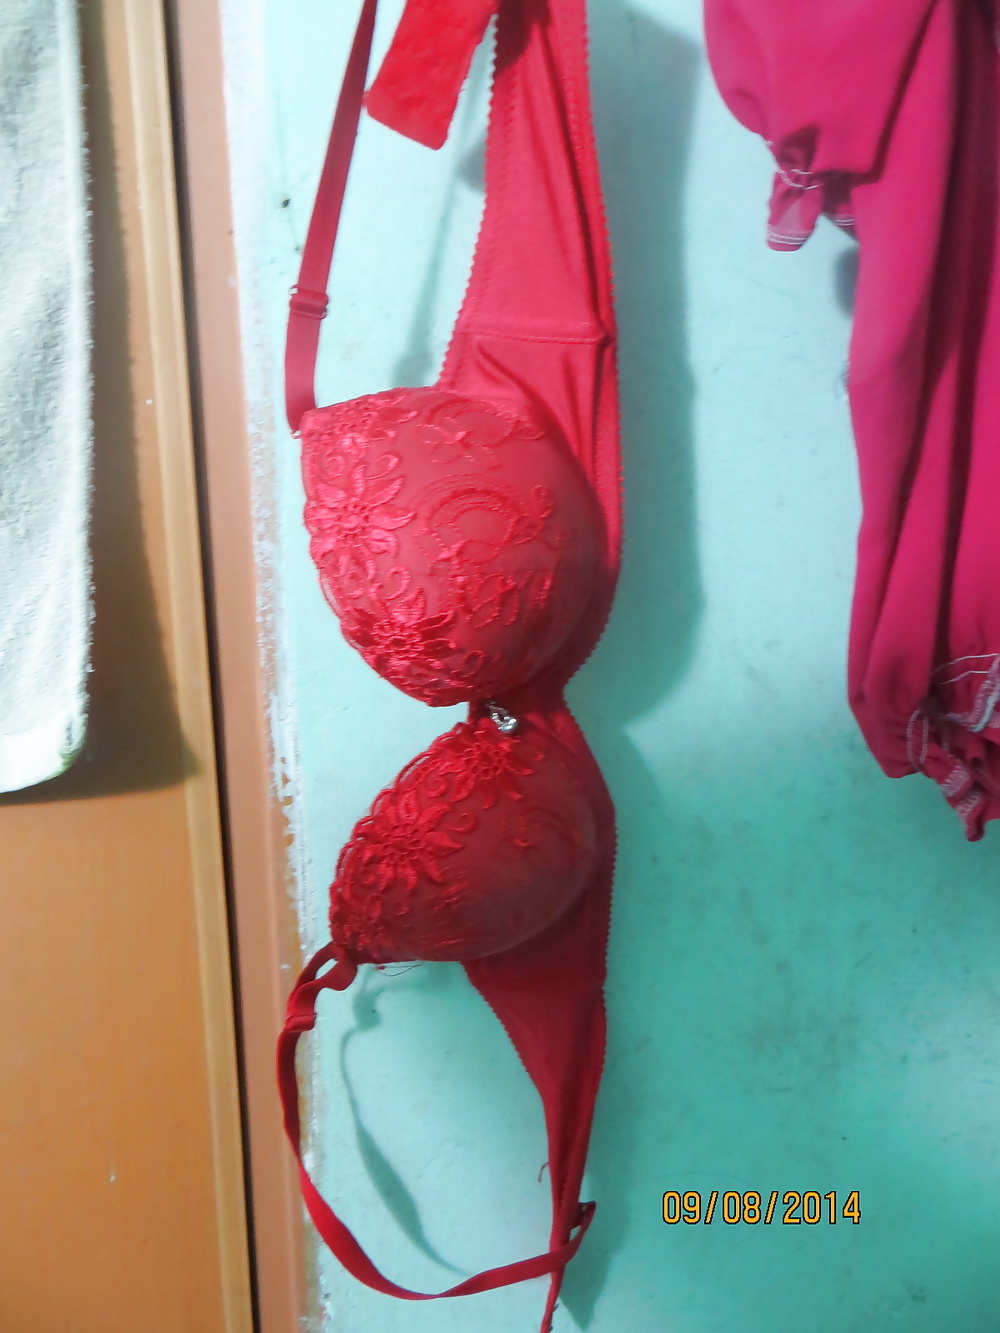 Sex Sexy panties & bras of my sexy milf neighbour 9-8-2014 image